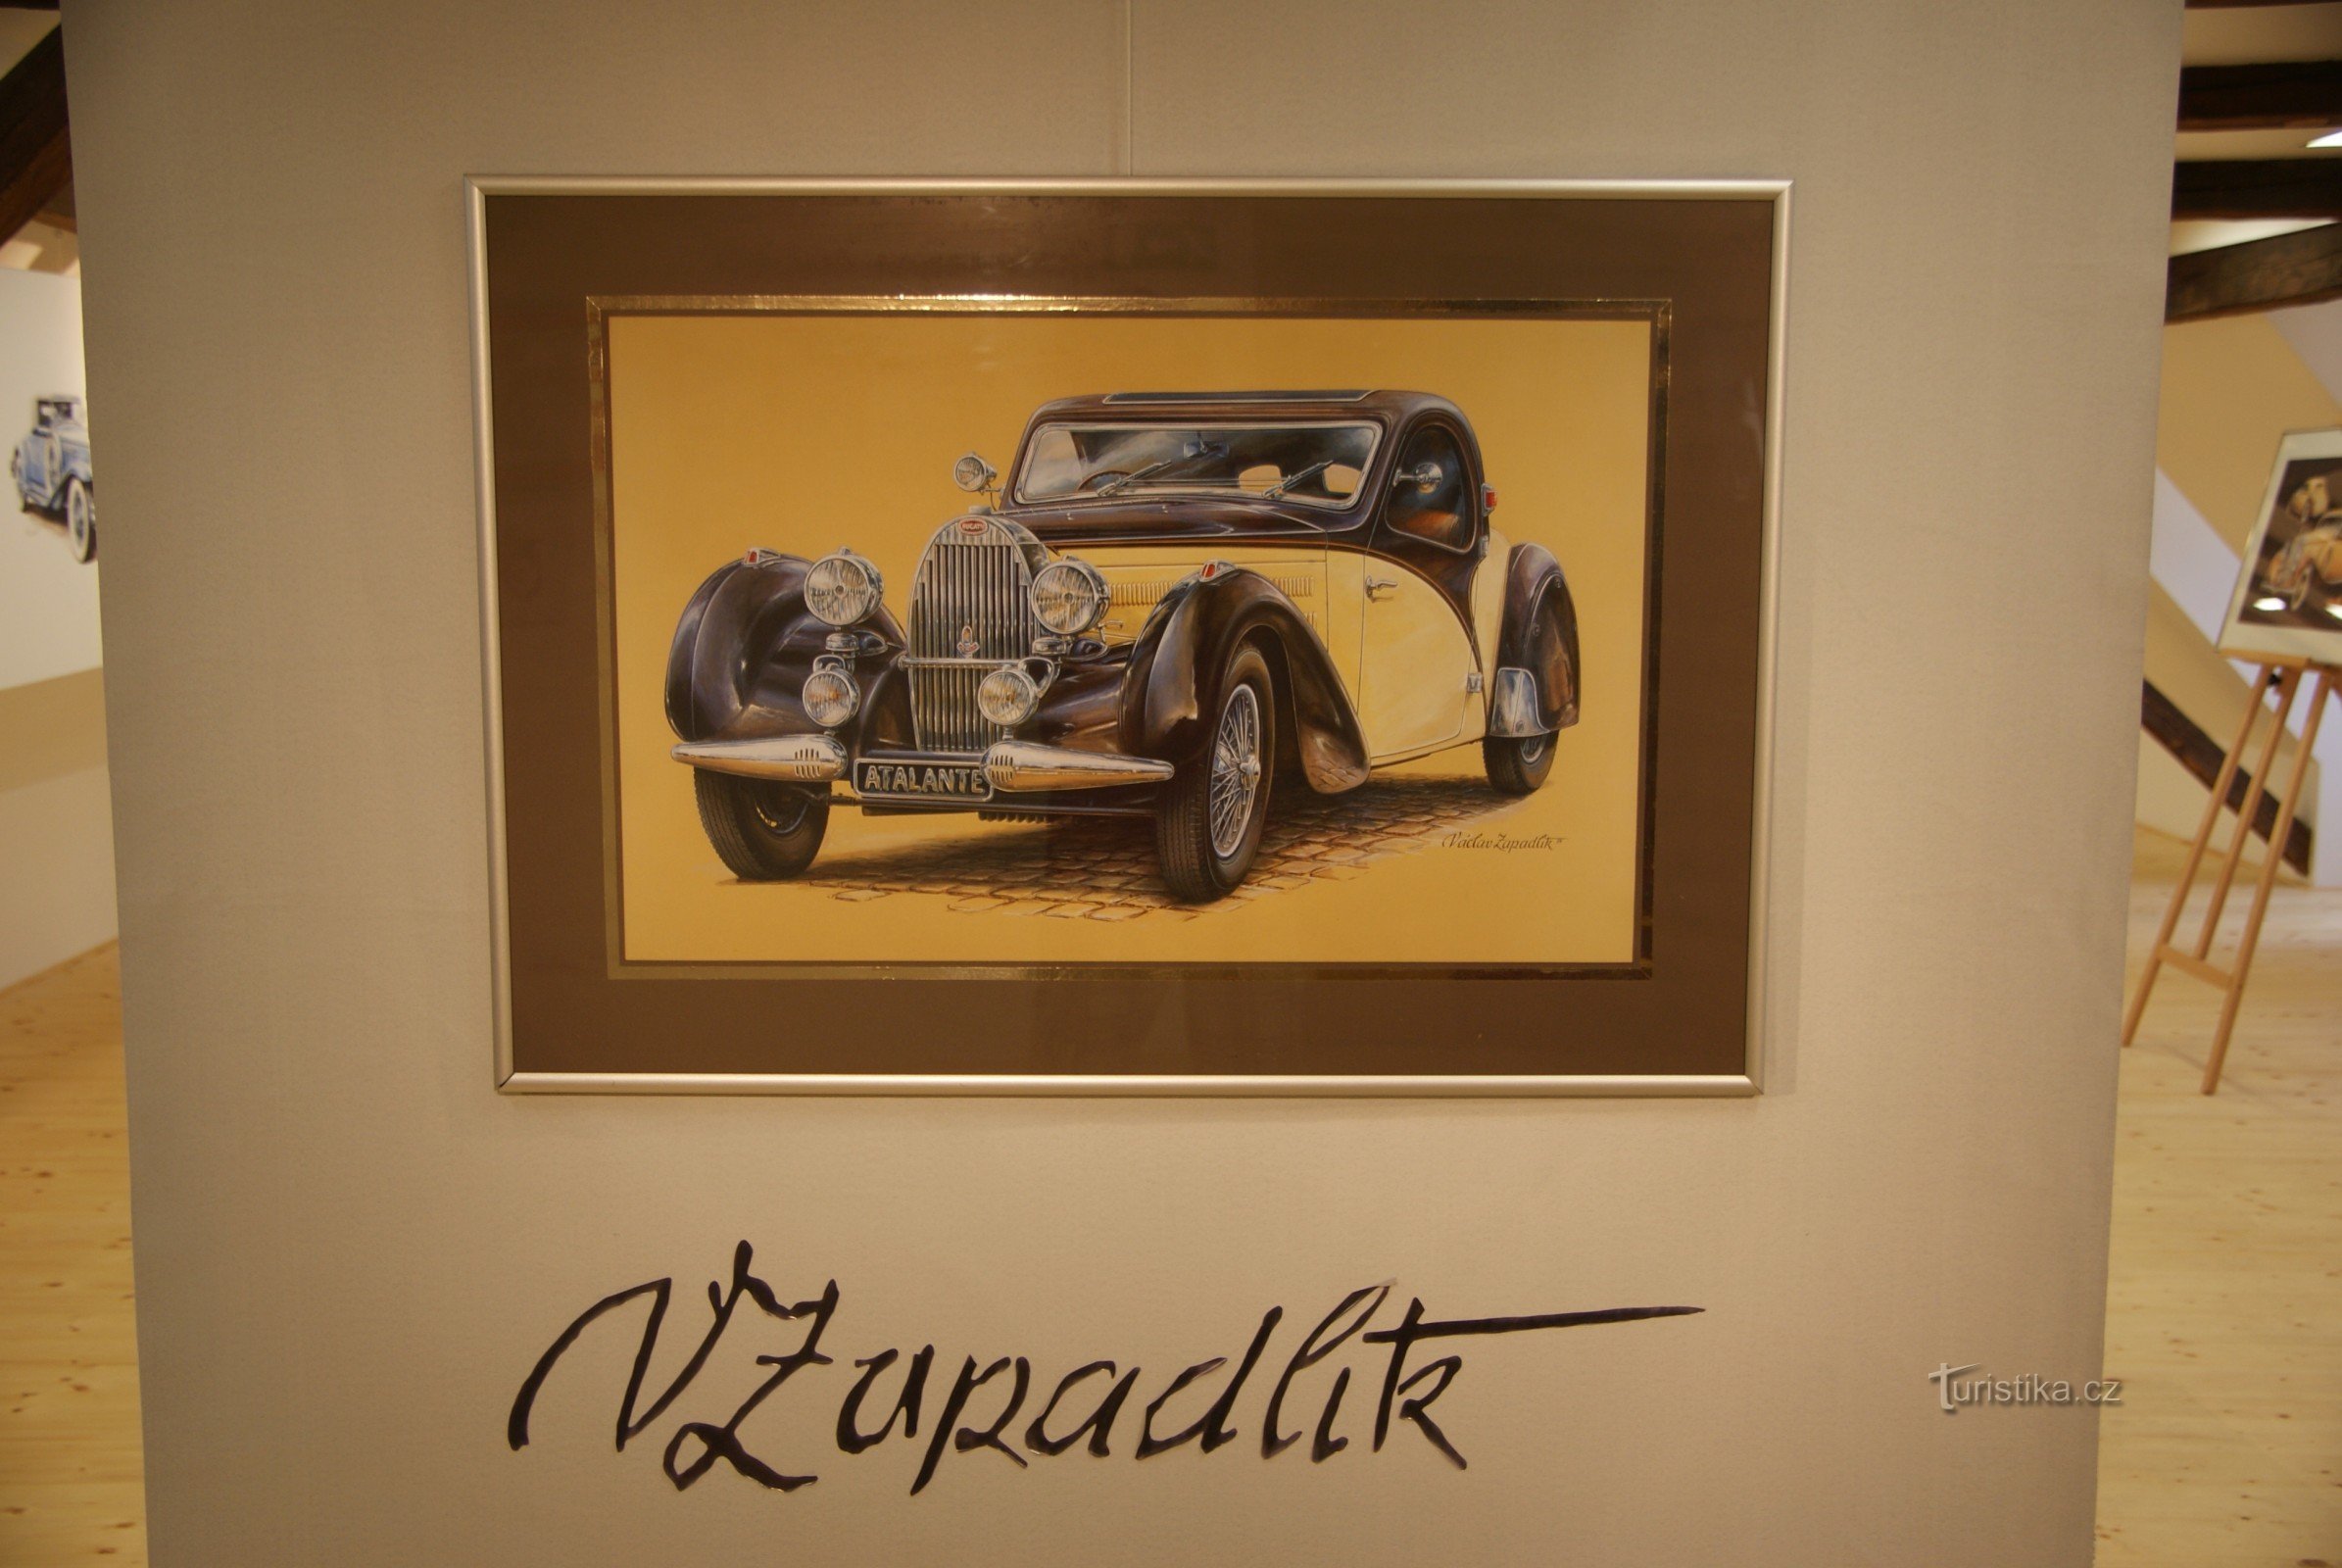 udstilling "Billeder af bilverdenen" af Václav Zapadlík